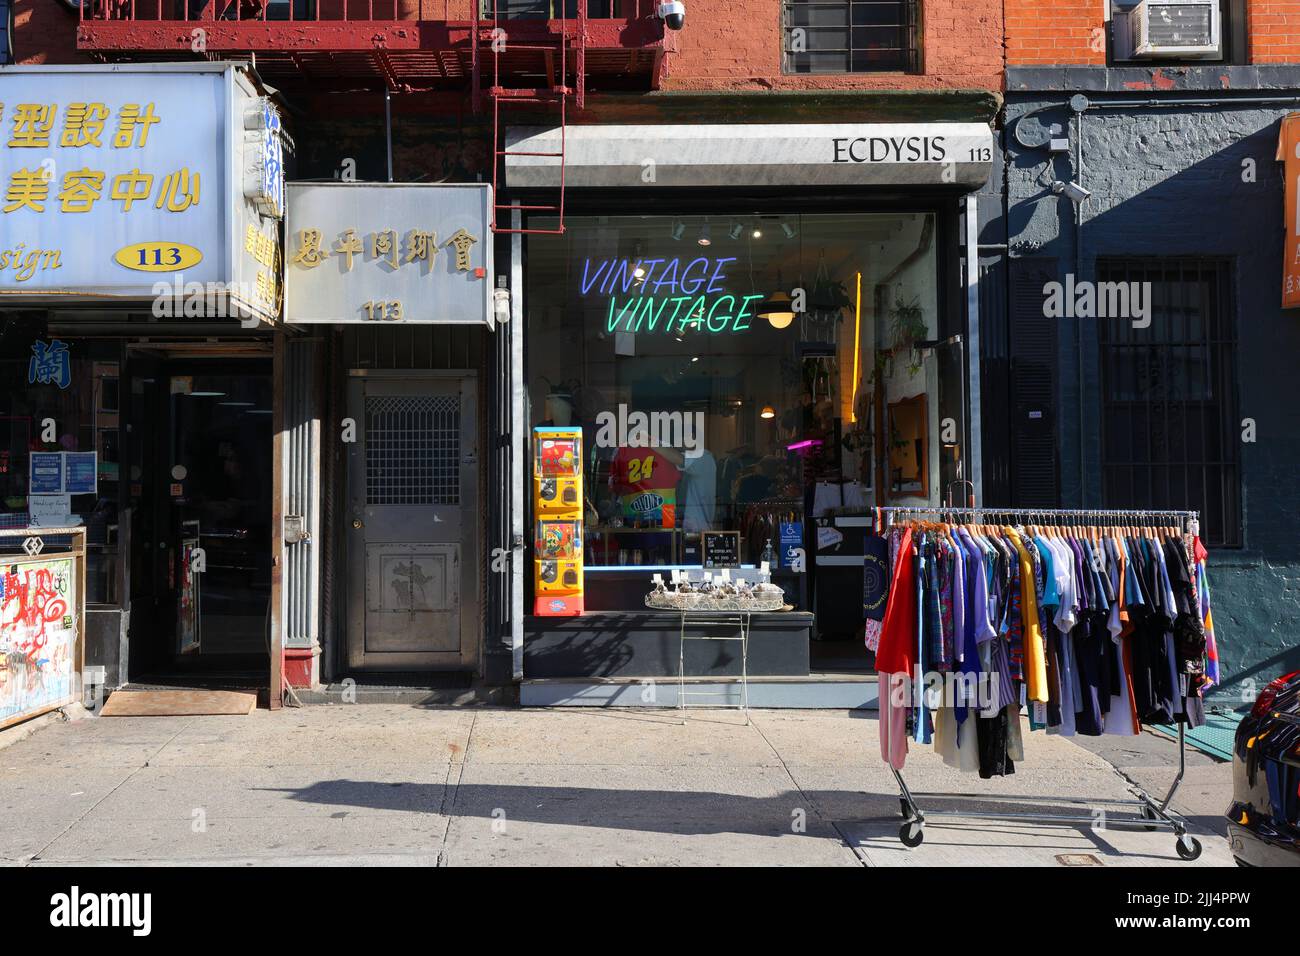 ECDYSIS, 113 Division St, New York, NY. Façade extérieure d'un magasin de vêtements d'époque dans le quartier chinois de 'Dimes Square' de Manhattan/Lower East Side Banque D'Images